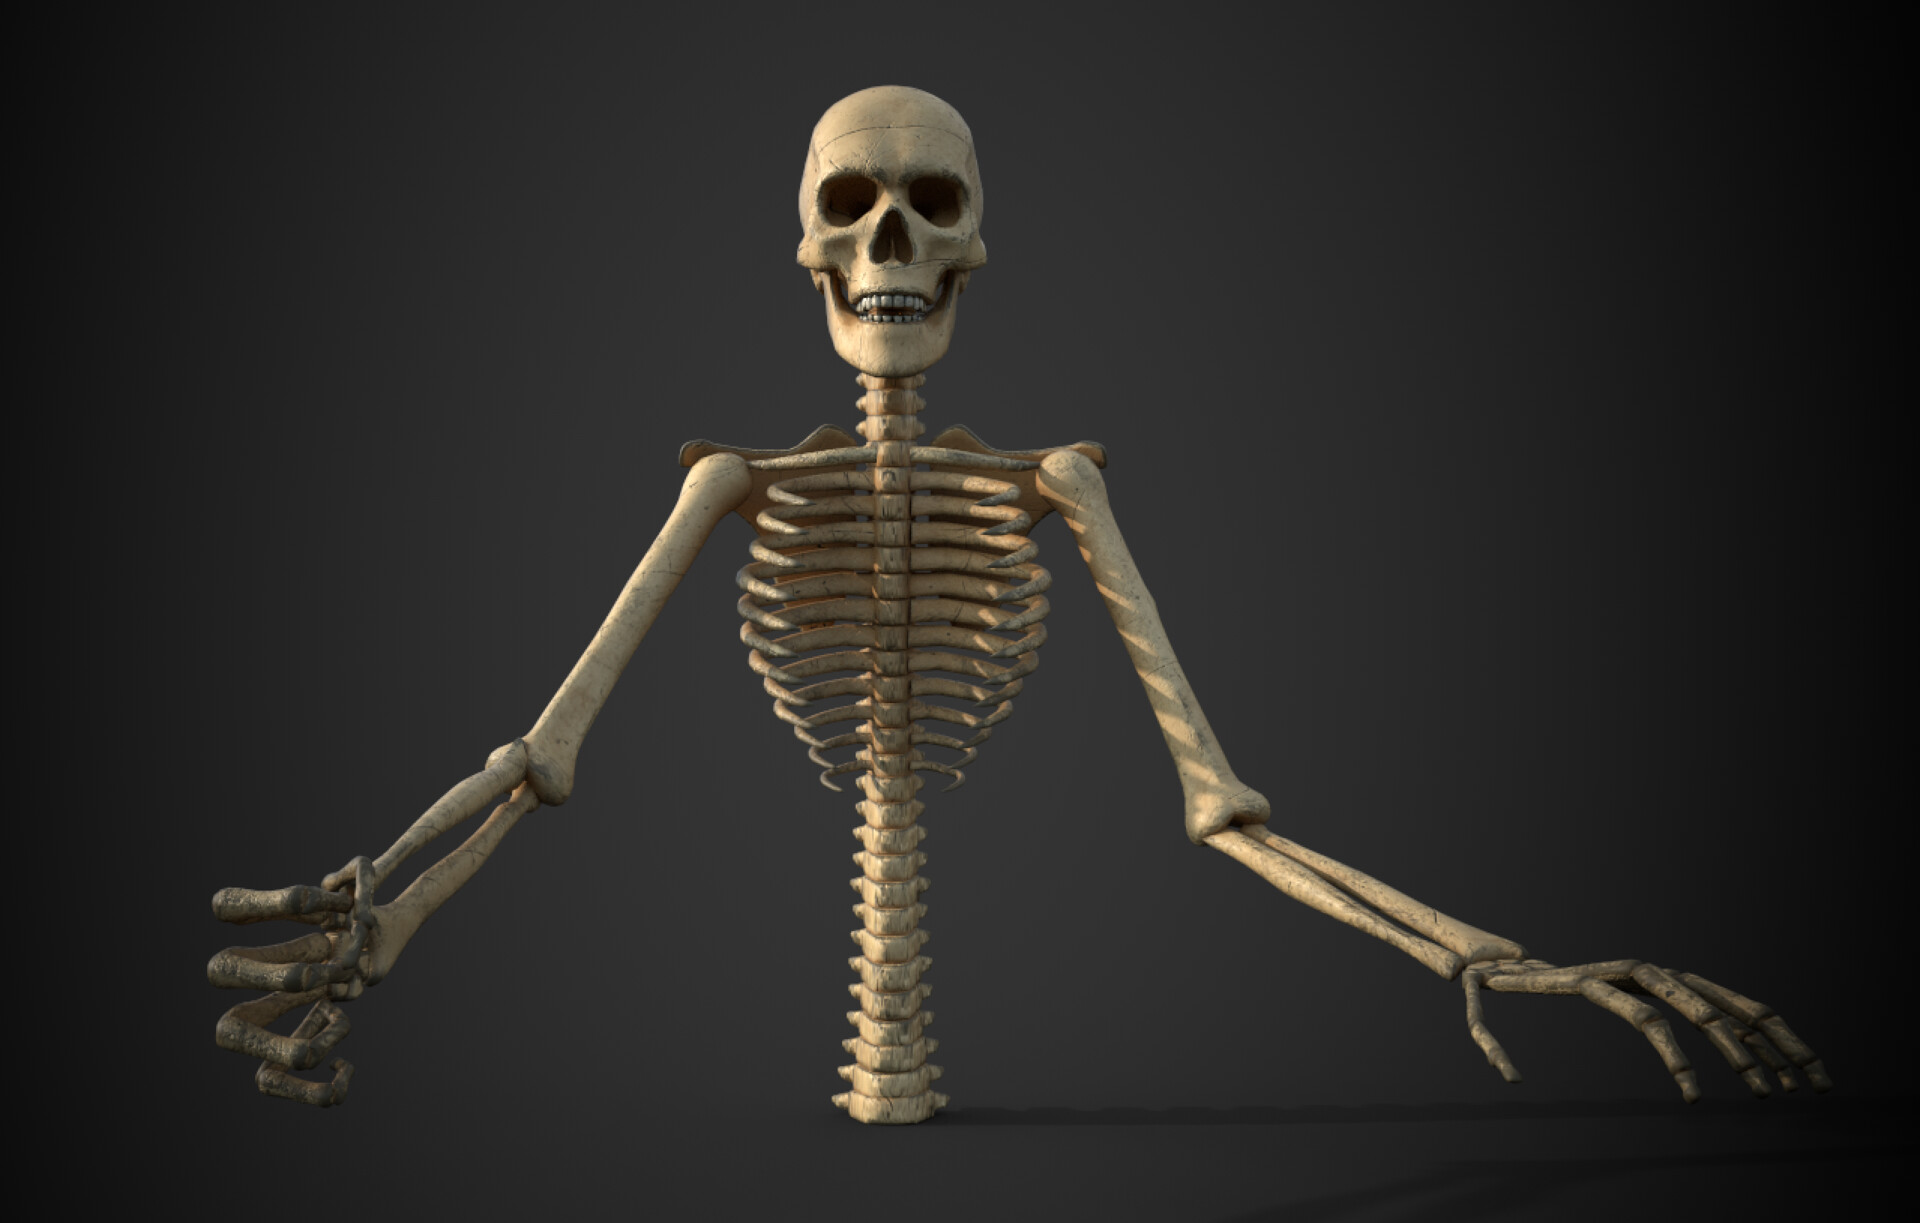 ArtStation - Skeleton model